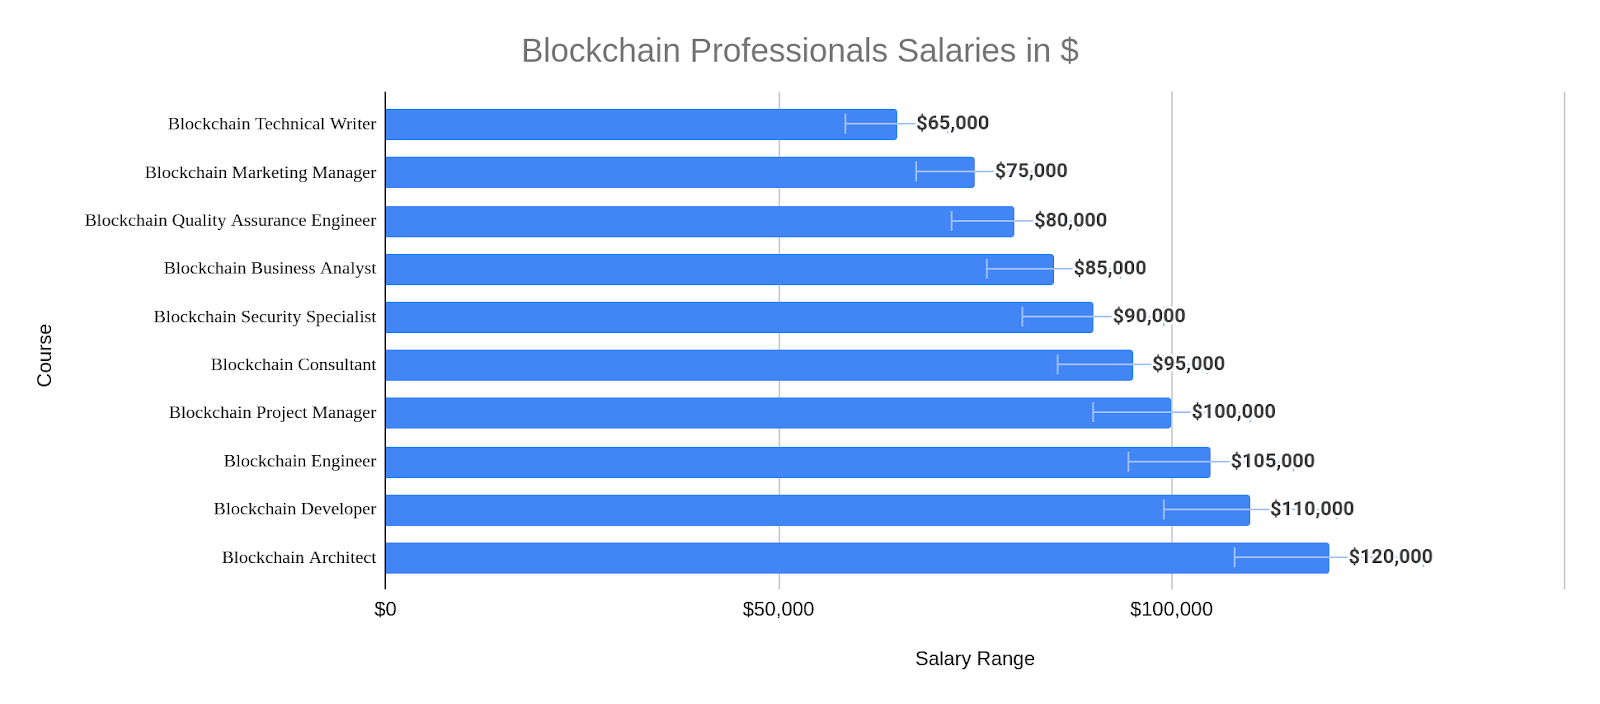 Blockchain Professionals Salaries in $